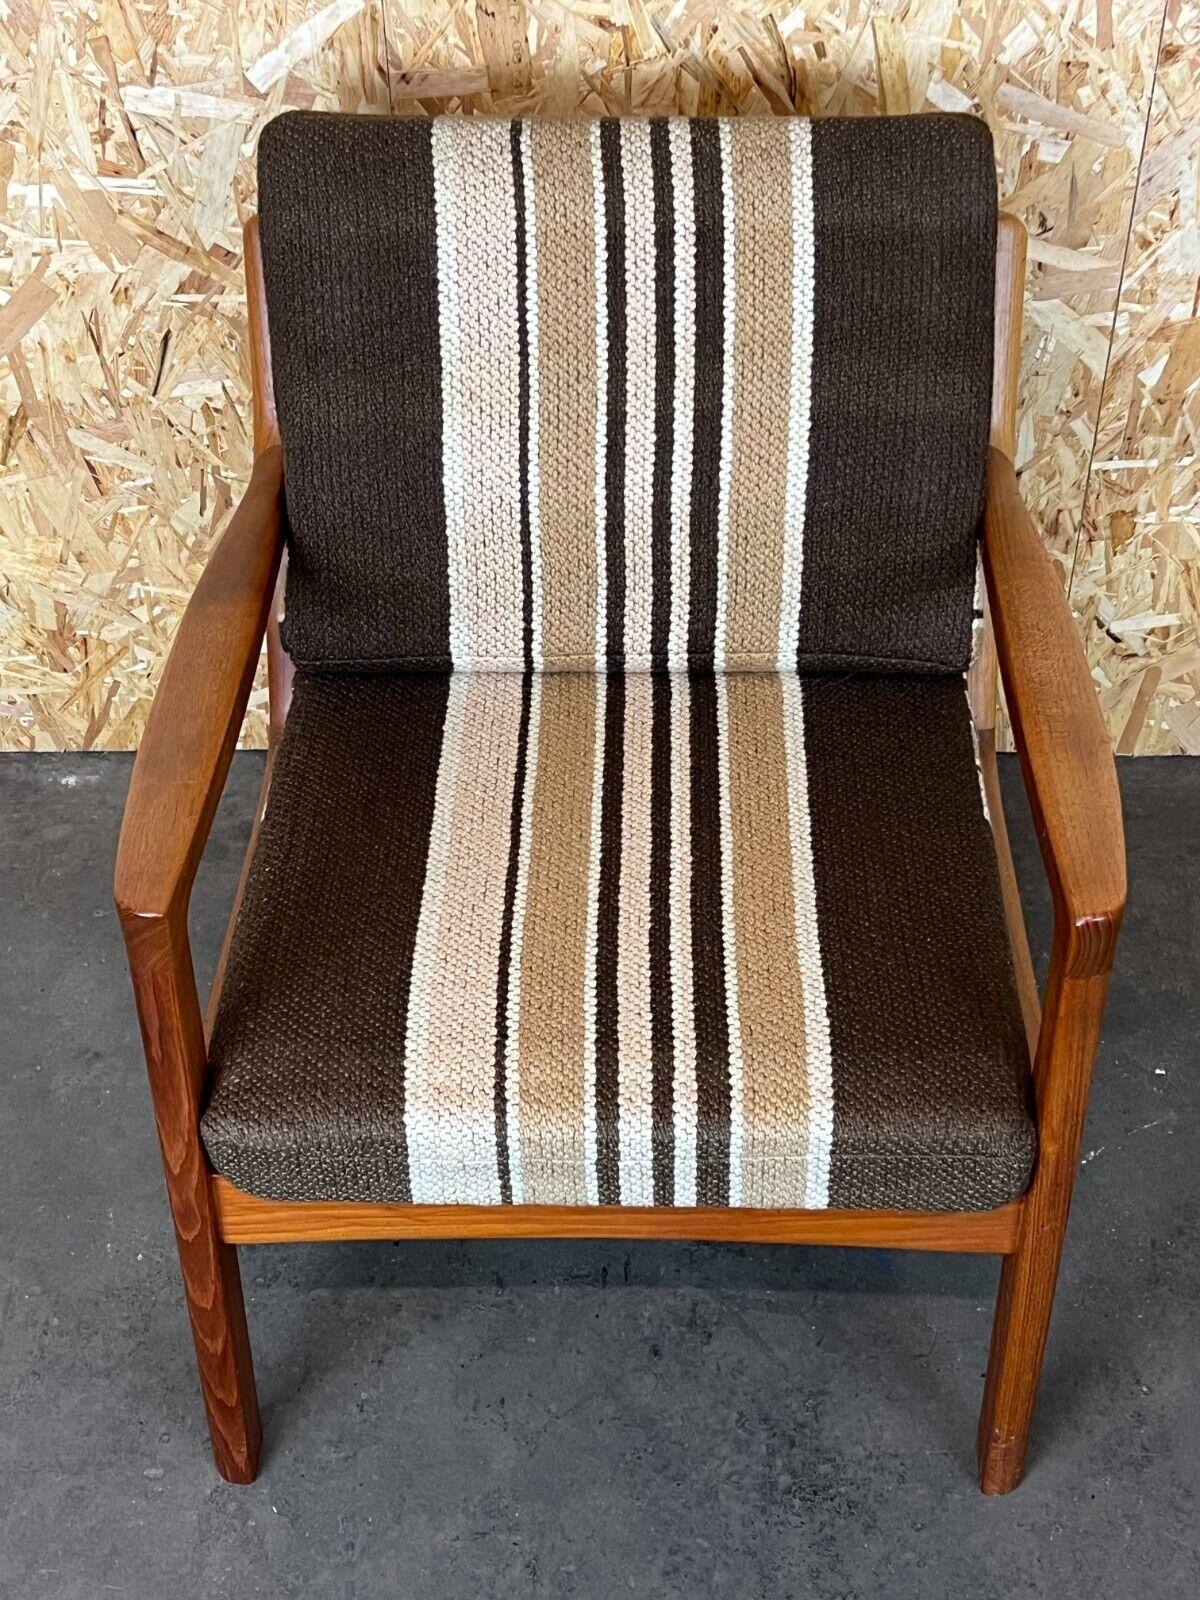 Late 20th Century 1960s-1970s Teak Easy Chair Ole Wanscher Cado France & Son Denmark